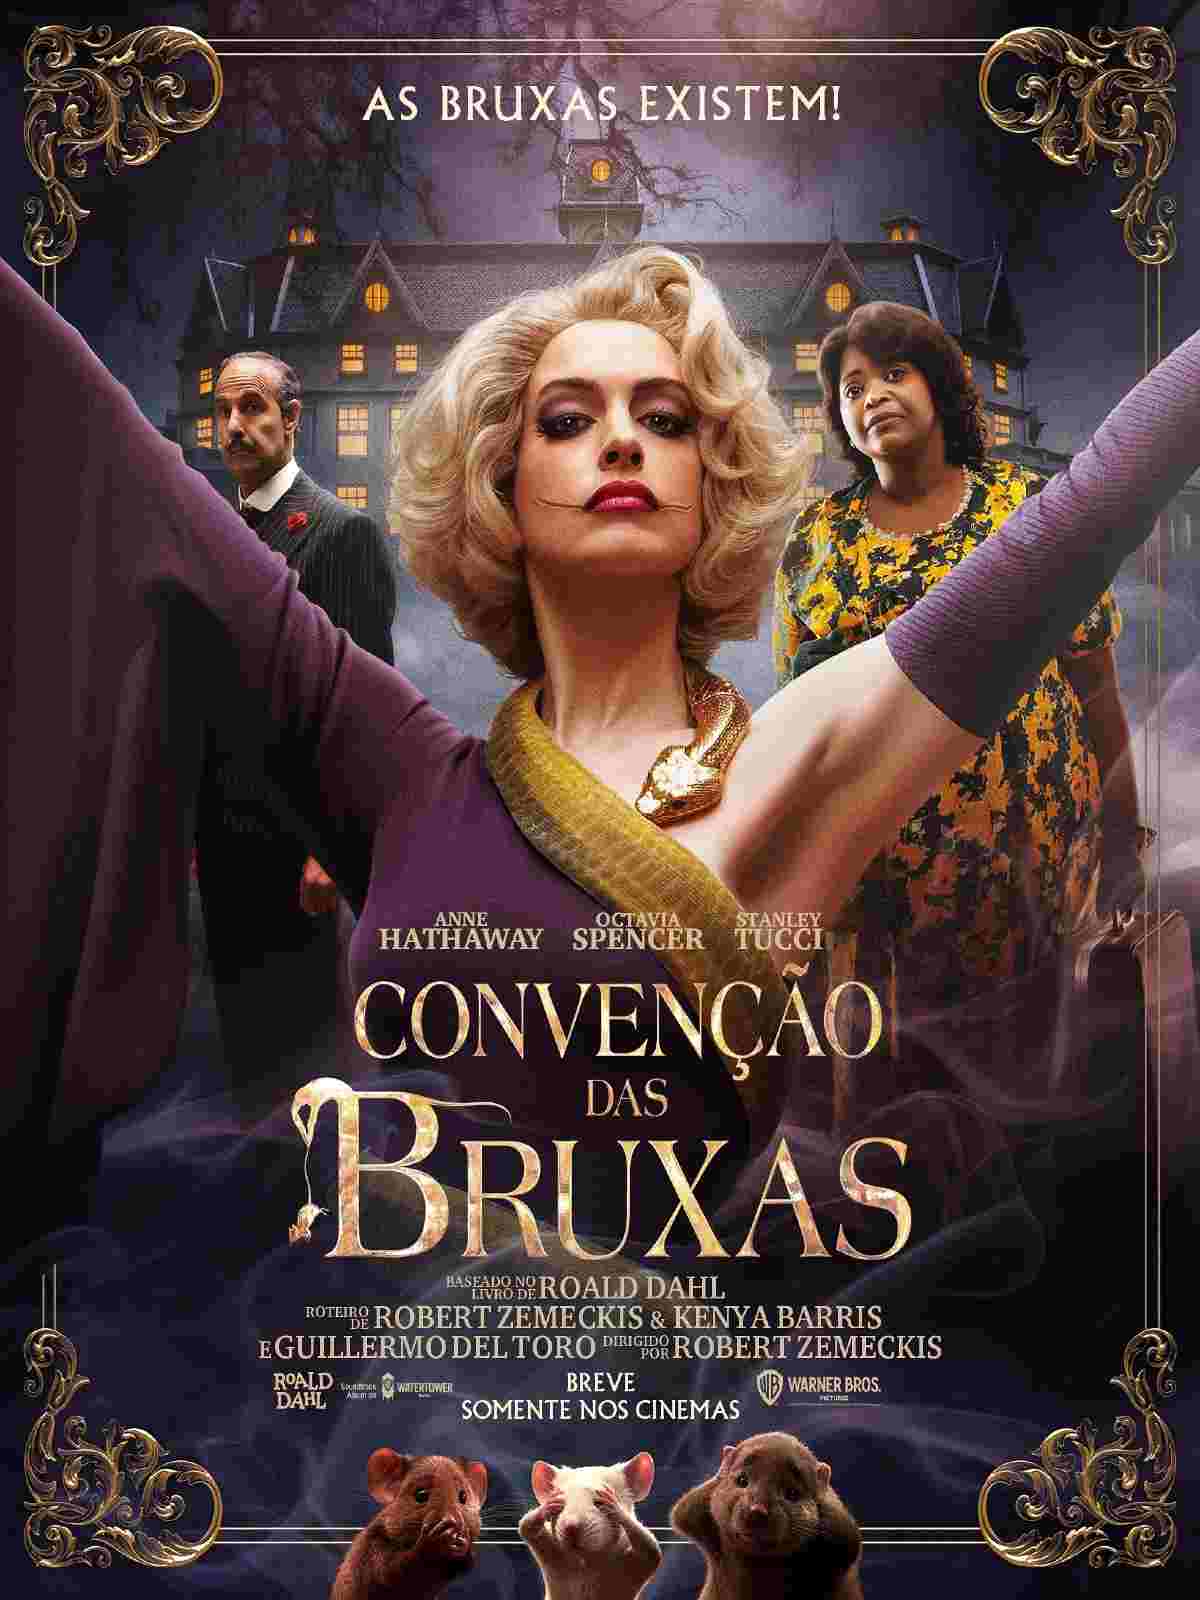 Convenção das Bruxas estreia quinta-feira no Cineplus Emacite (2)